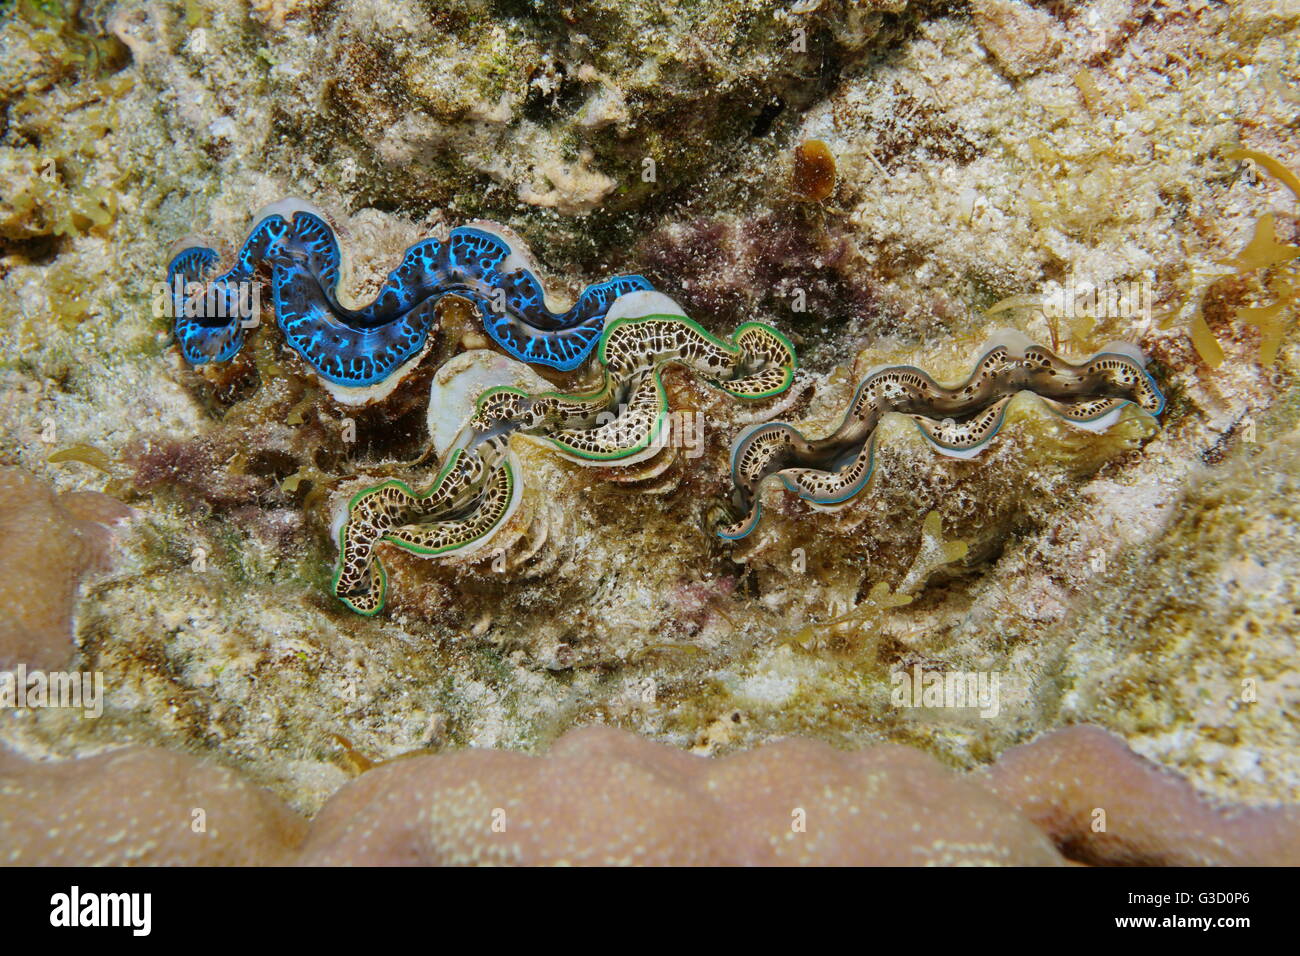 Tre maxima clam Tridacna maxima, con colori diversi, marine mollusco bivalve subacquea, oceano pacifico, Polinesia Francese Foto Stock